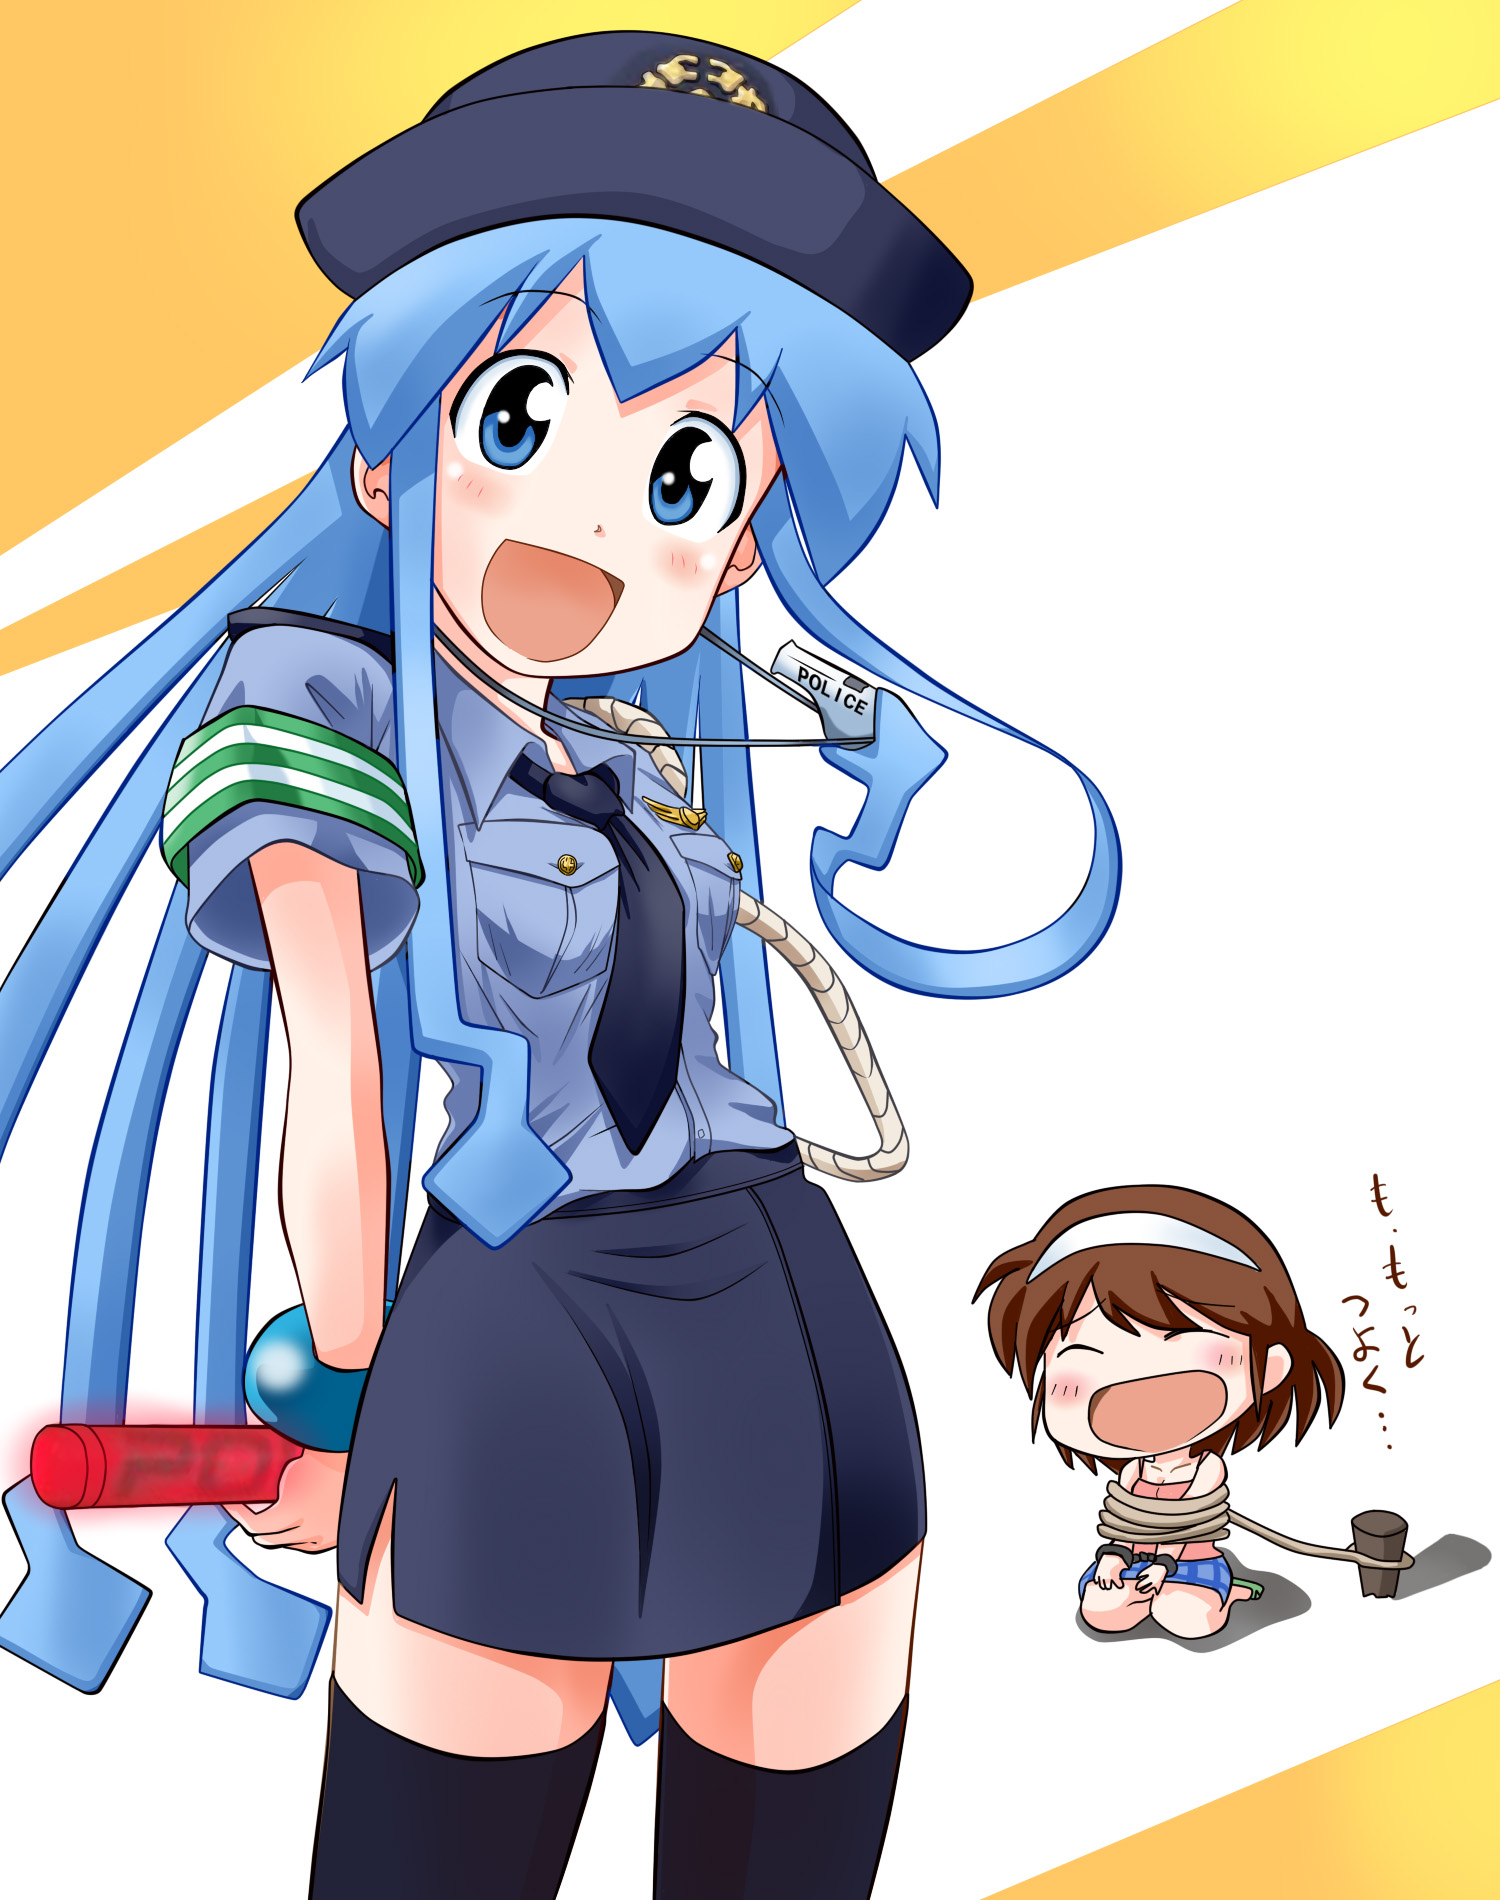 逮捕しちゃうぞ 警察官コスプレをした女子キャラクターのイラスト集の画像 08 Hukei